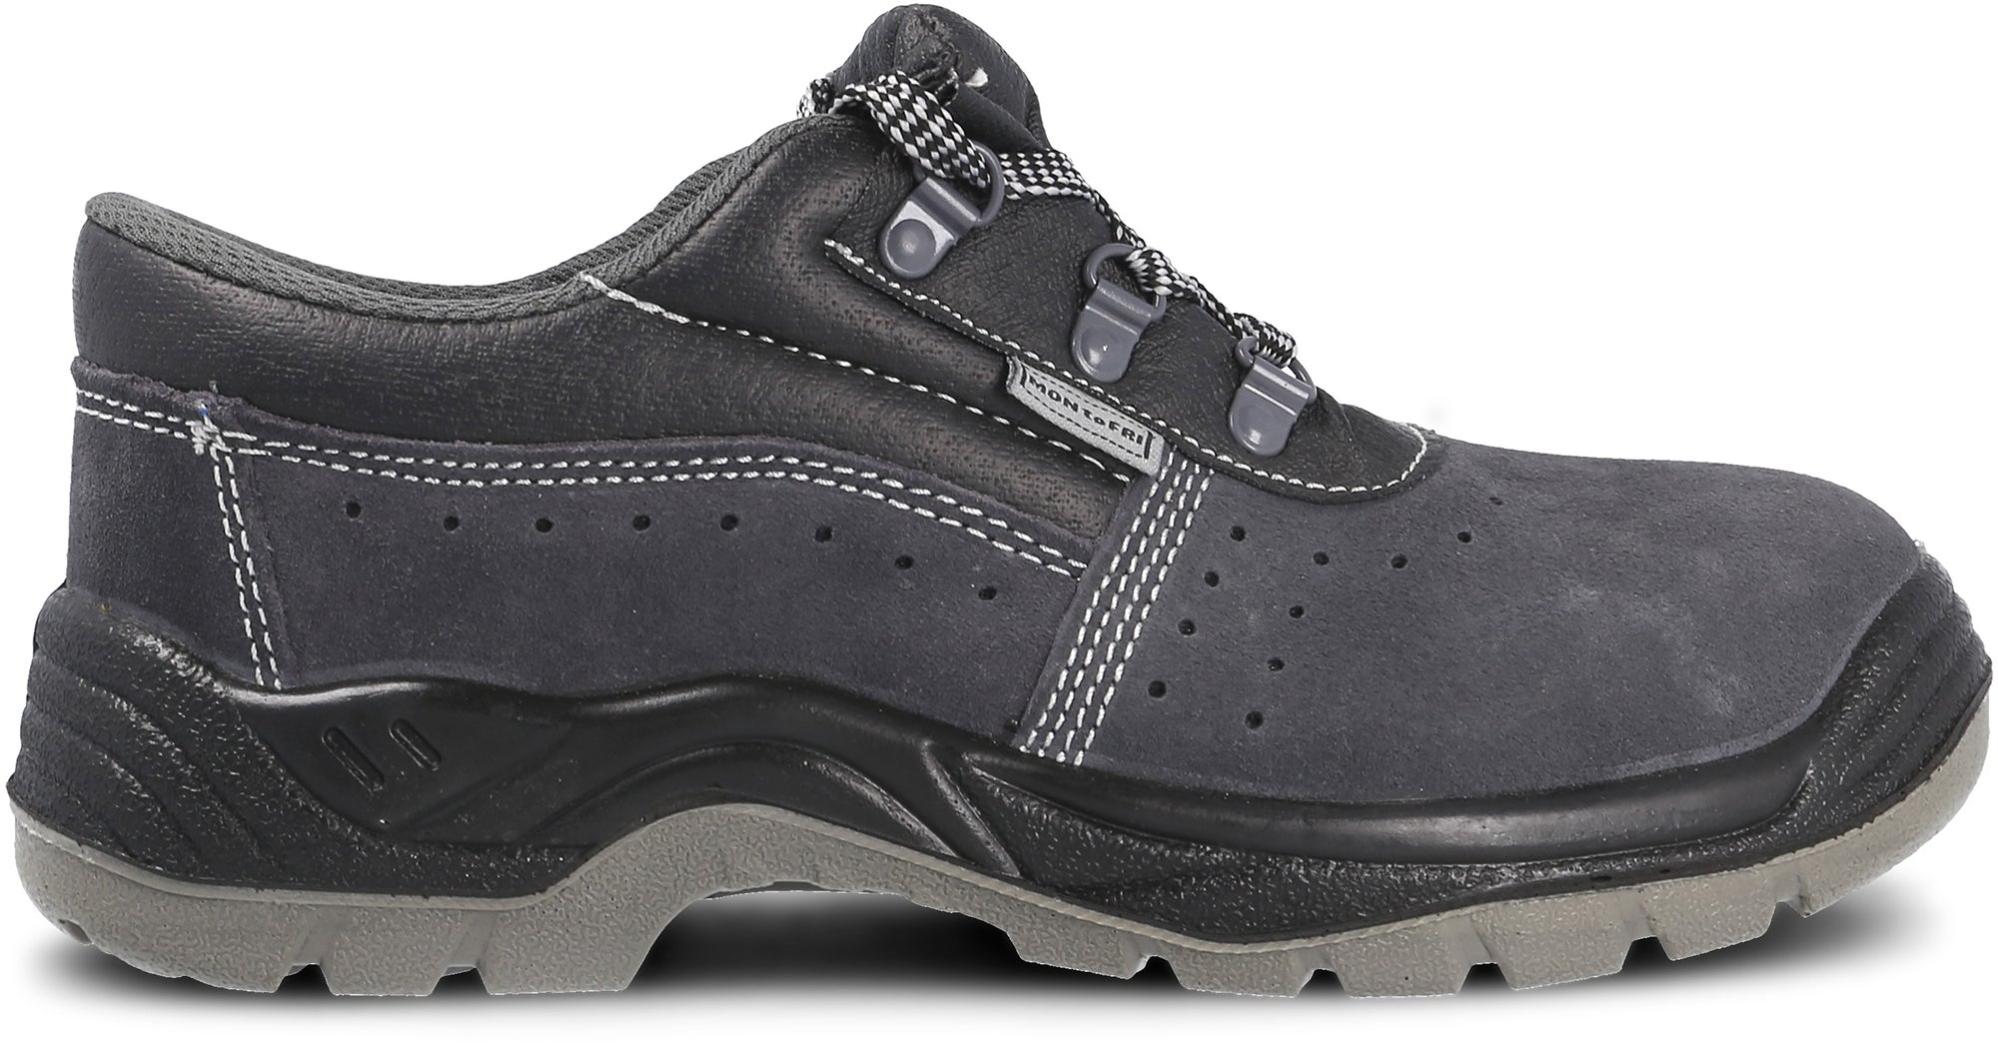 Zapato seguridad paredes, zp1002 serraje gris, s1p talla 46